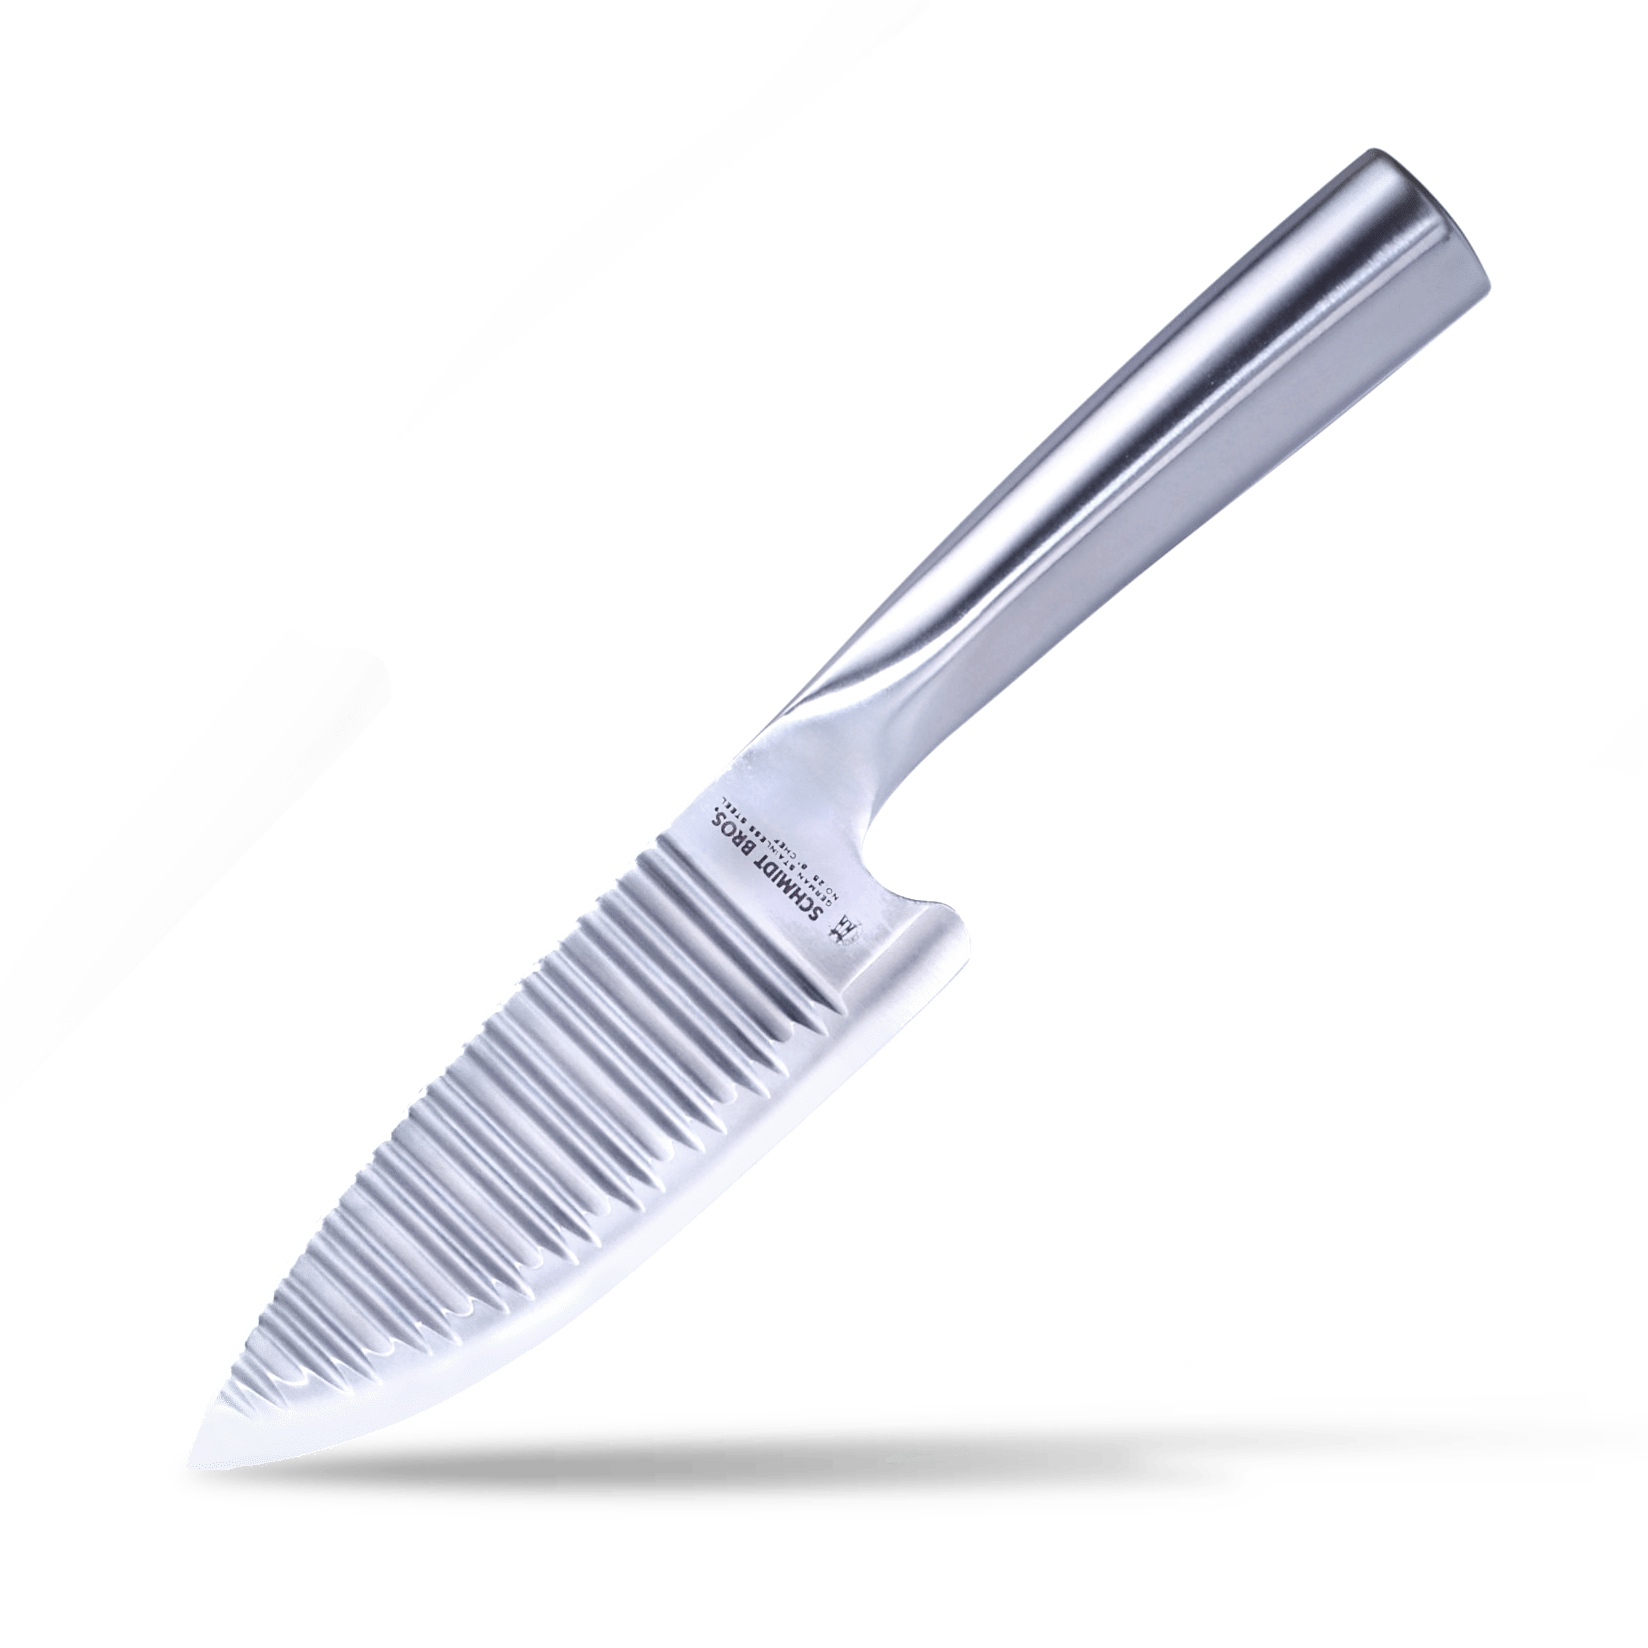 Viking 6-Piece German Steel Hollow Handle Cutlery Set with Sleeves